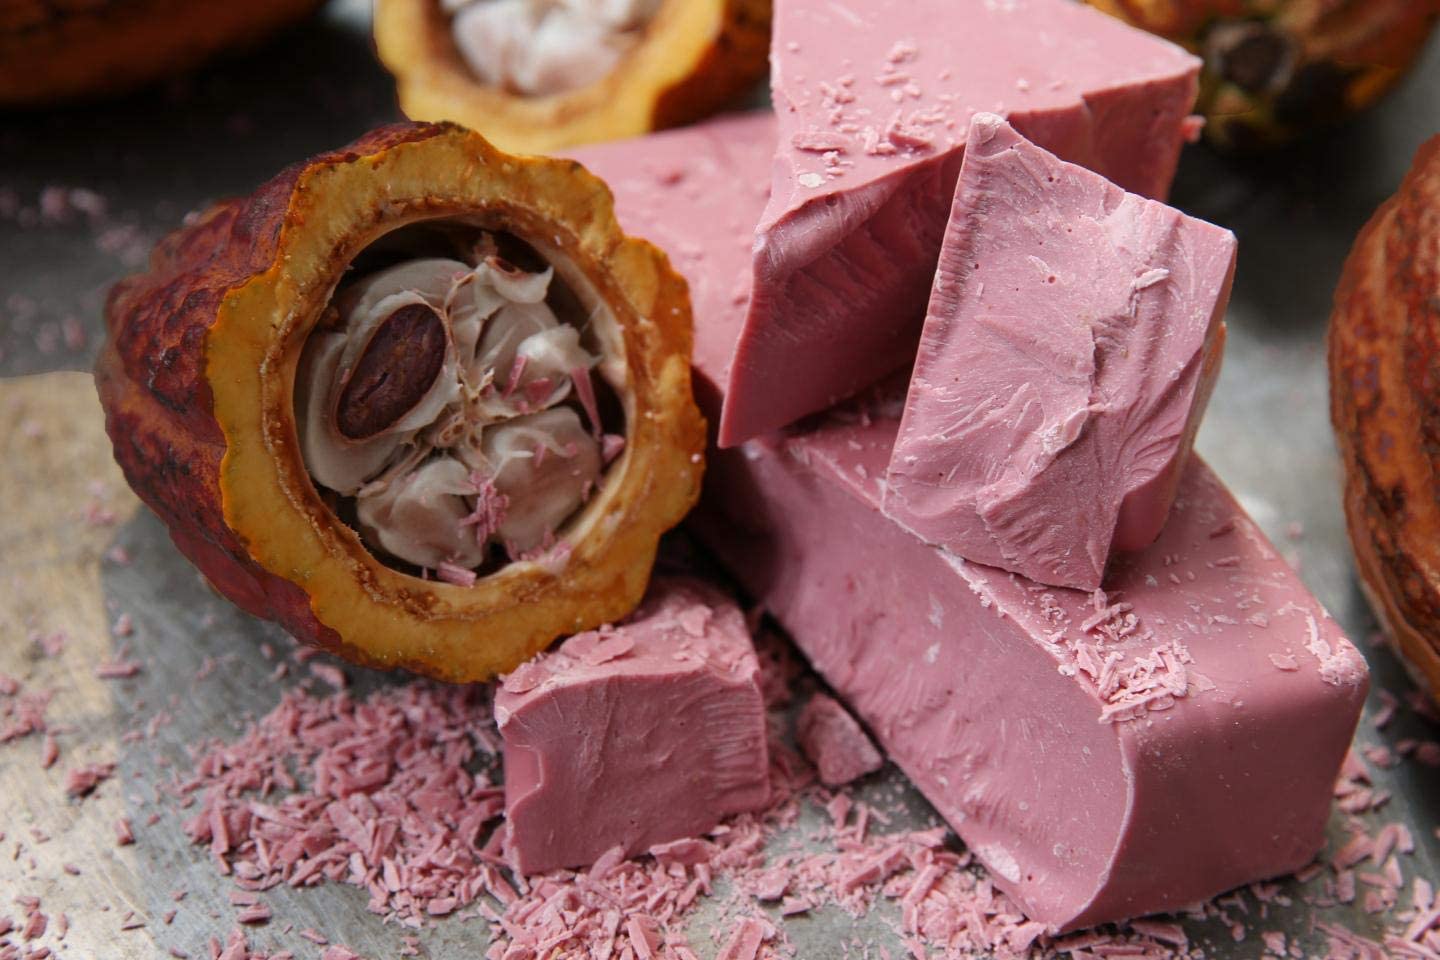 Callebaut Ruby 47,3% Gocce di cioccolato belga Ruby 2,5 kg